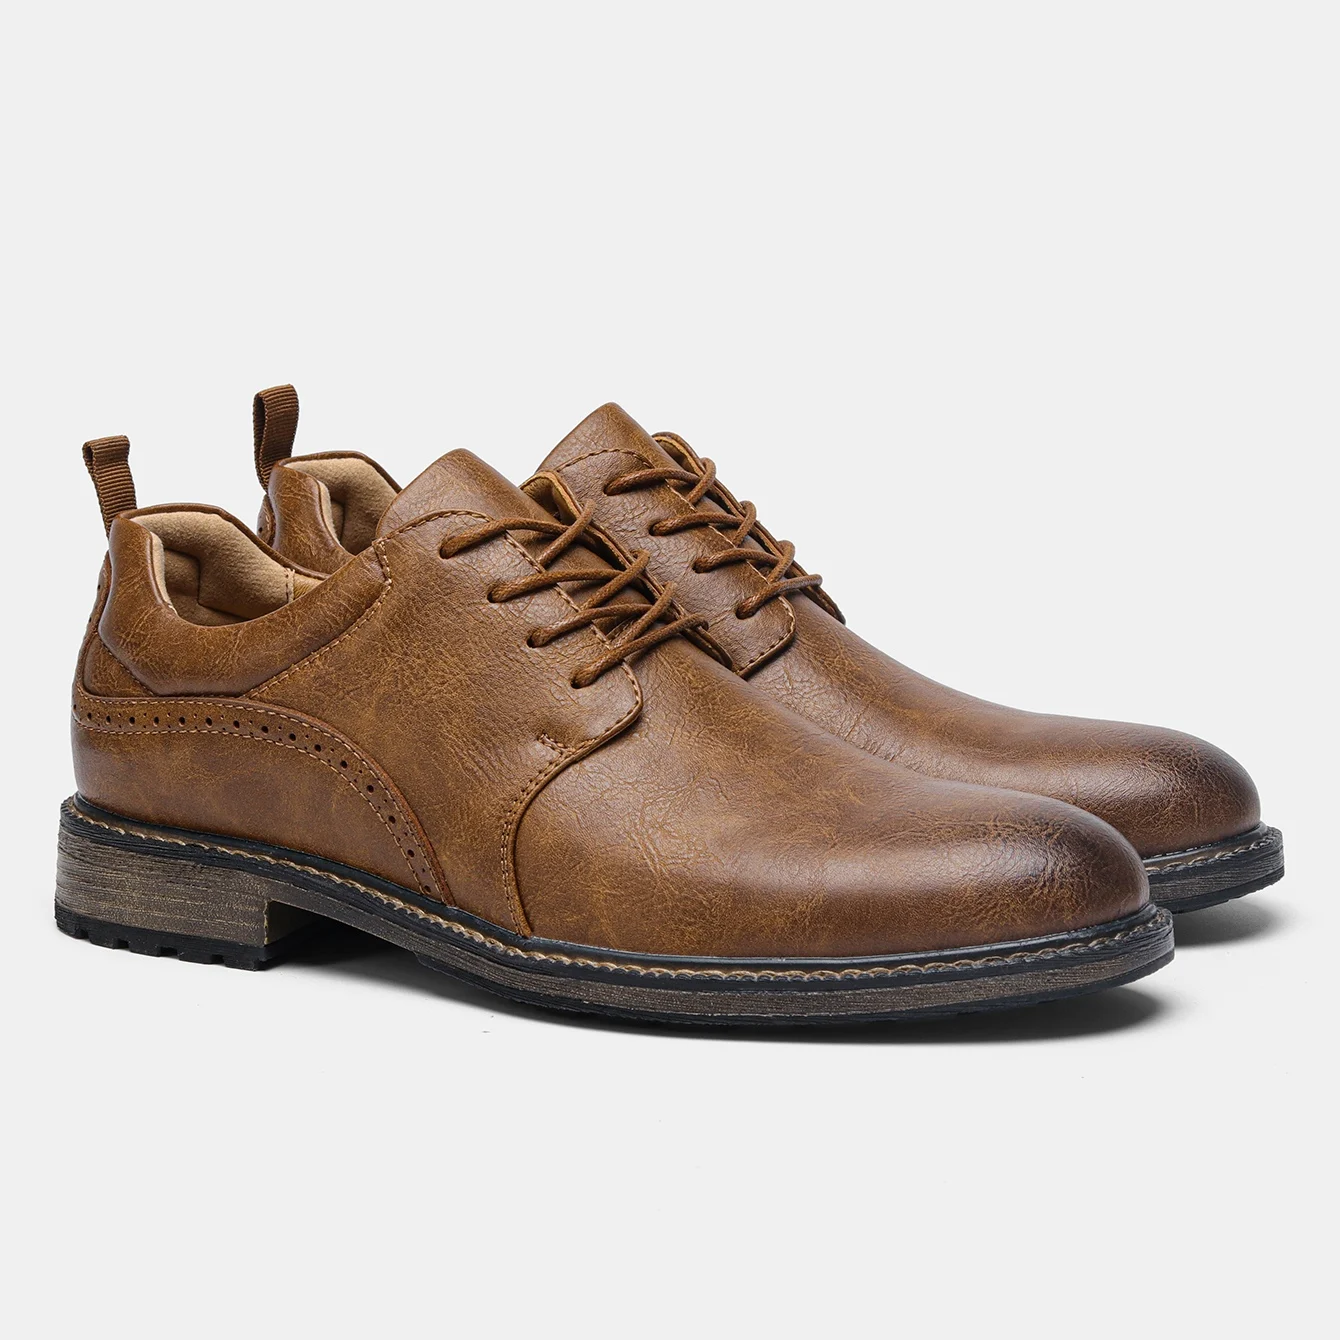 Casual Shoes Men Fashion Brand Comfortable Leather Shoes Men #Al7261 - $50.63